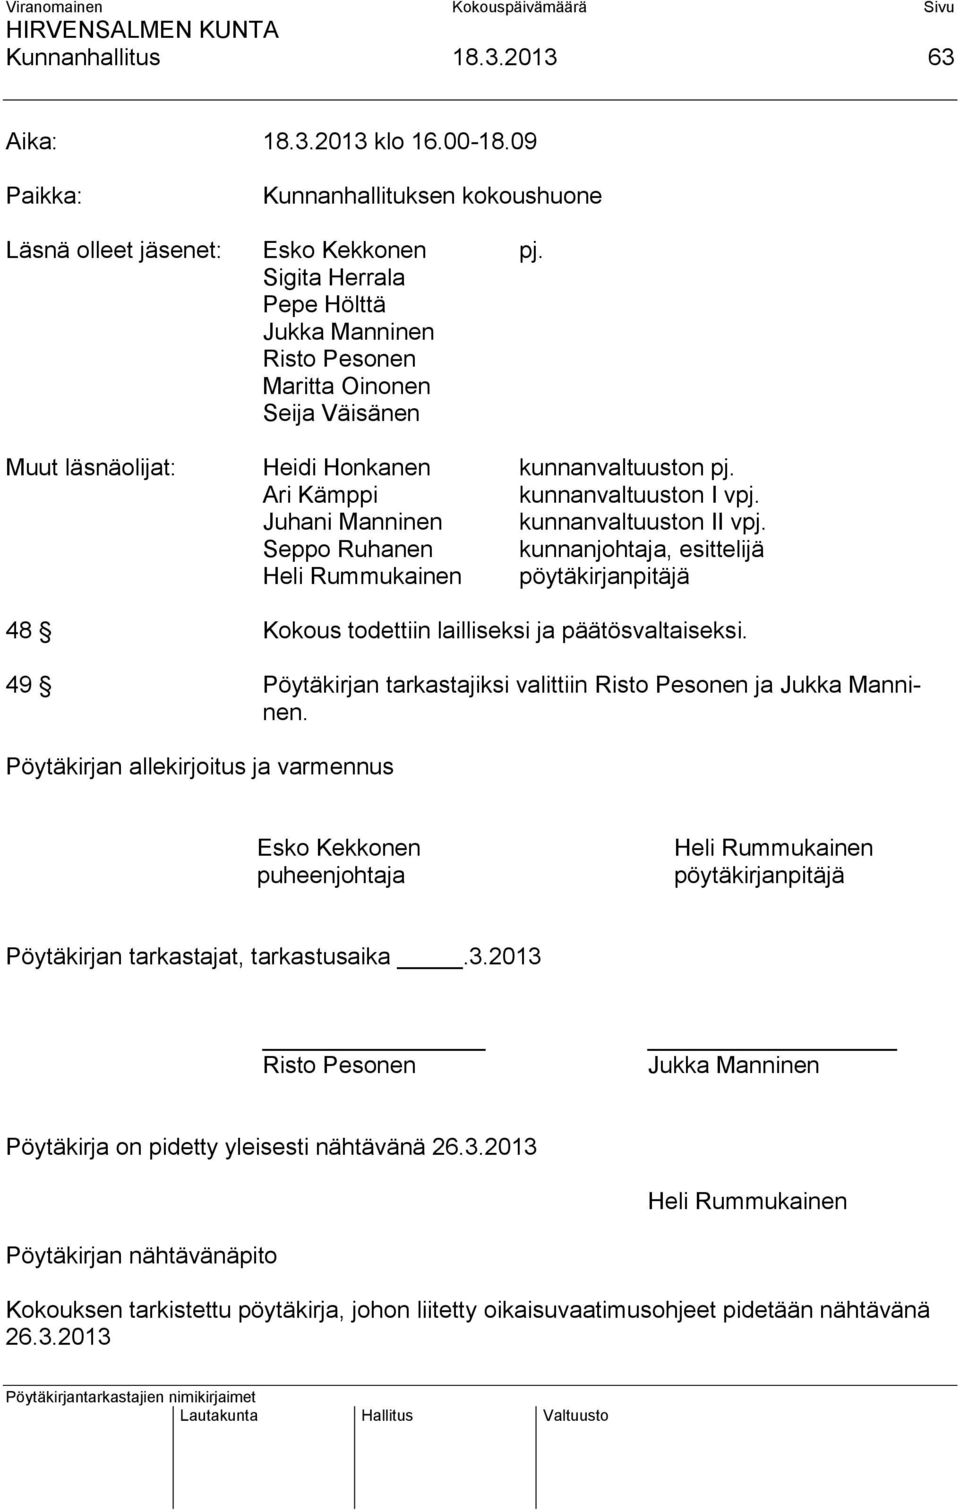 Juhani Manninen kunnanvaltuuston II vpj. Seppo Ruhanen kunnanjohtaja, esittelijä Heli Rummukainen pöytäkirjanpitäjä 48 Kokous todettiin lailliseksi ja päätösvaltaiseksi.